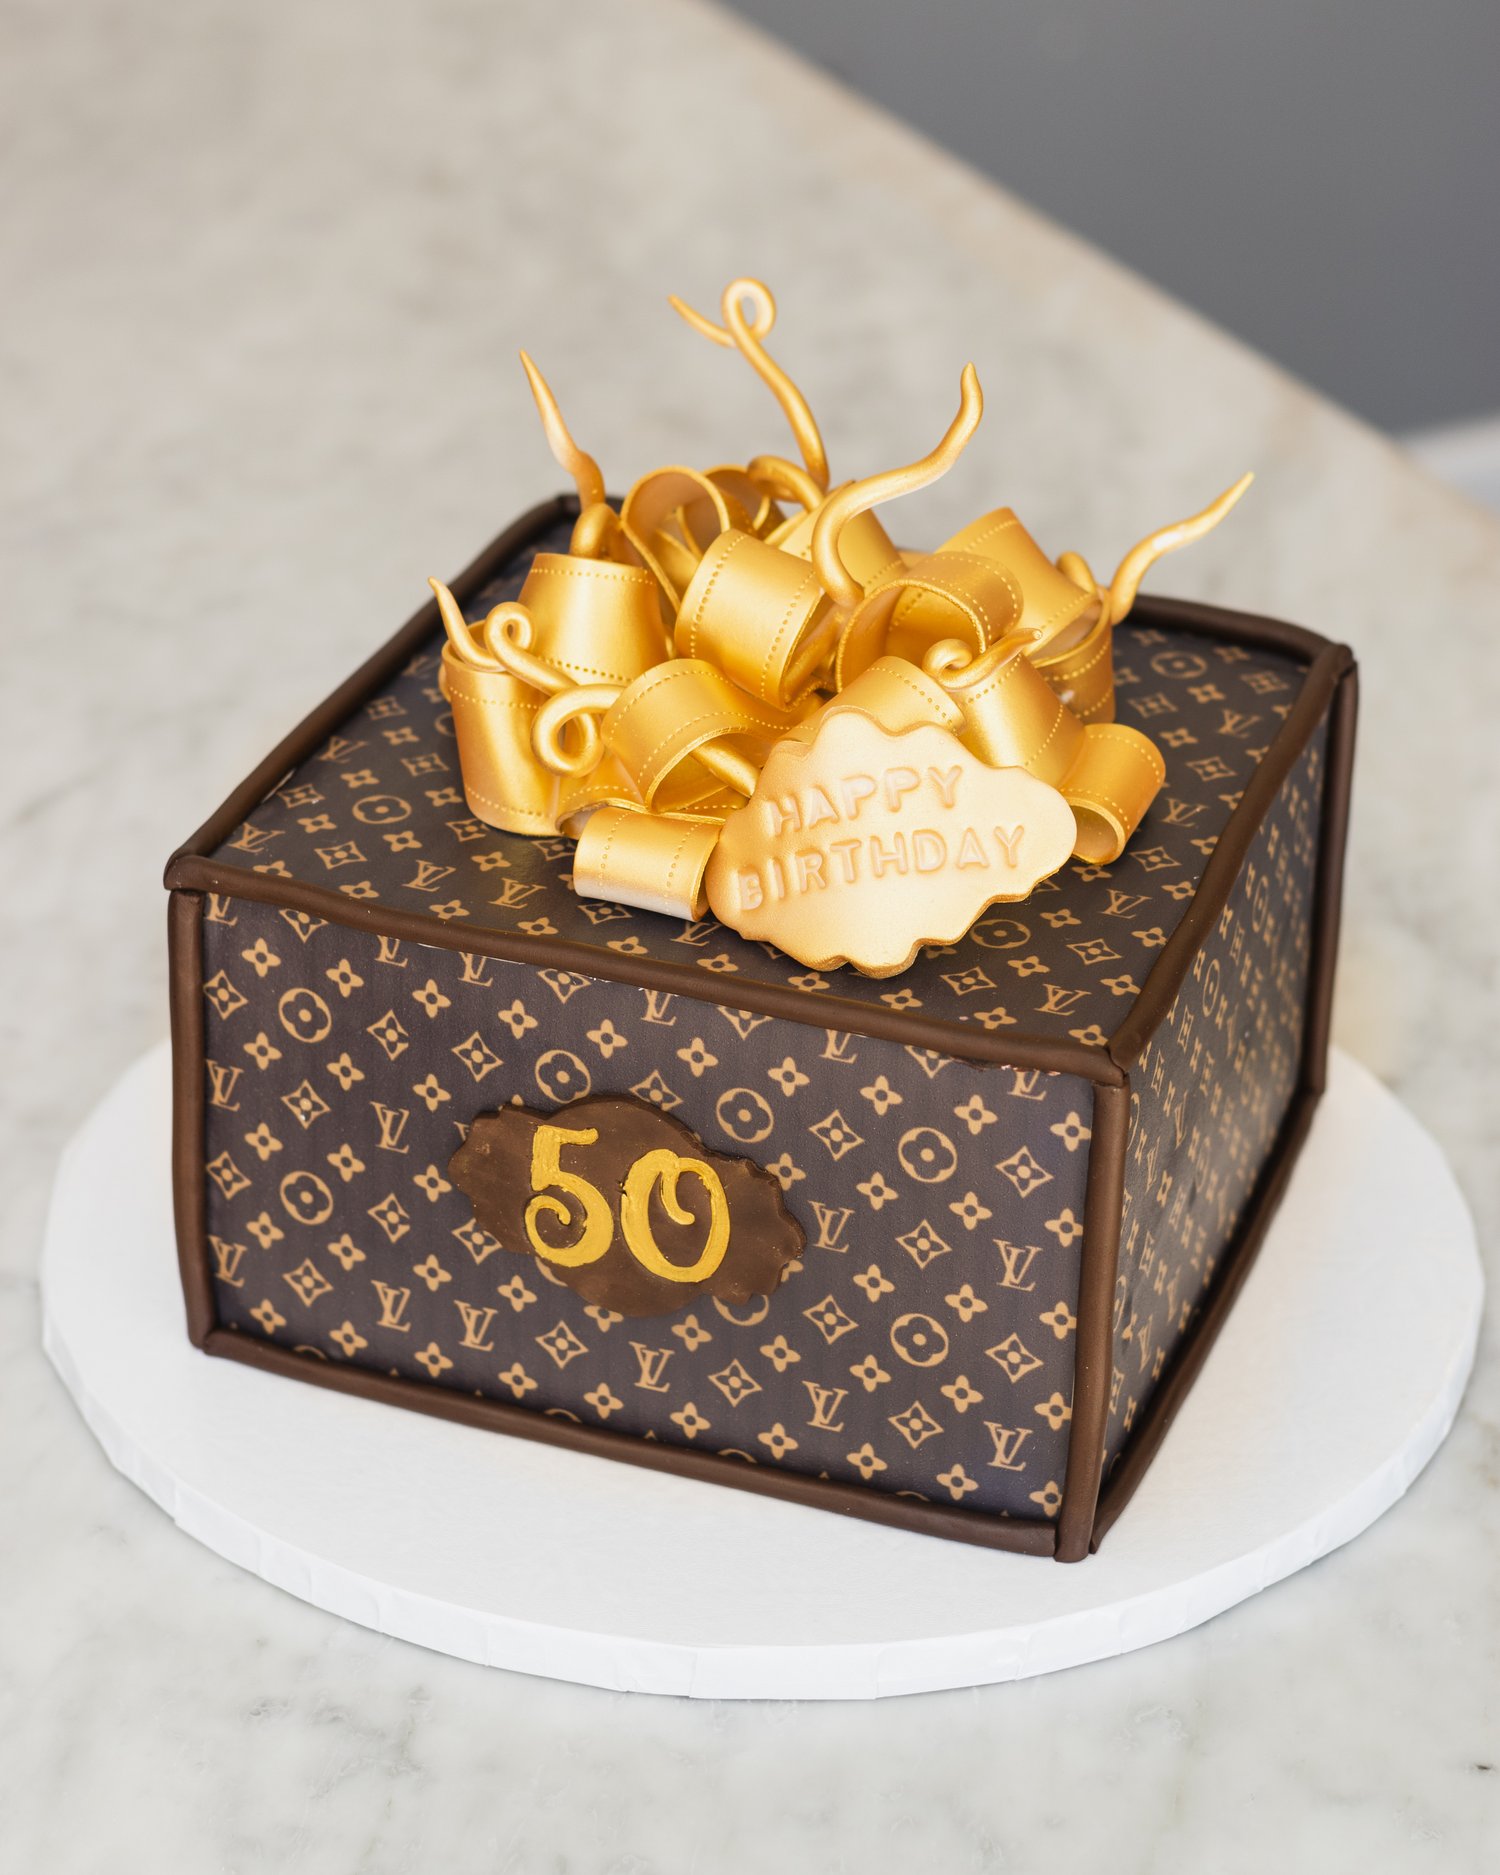 Louis Vuitton Cake Theme How to Make Easy 